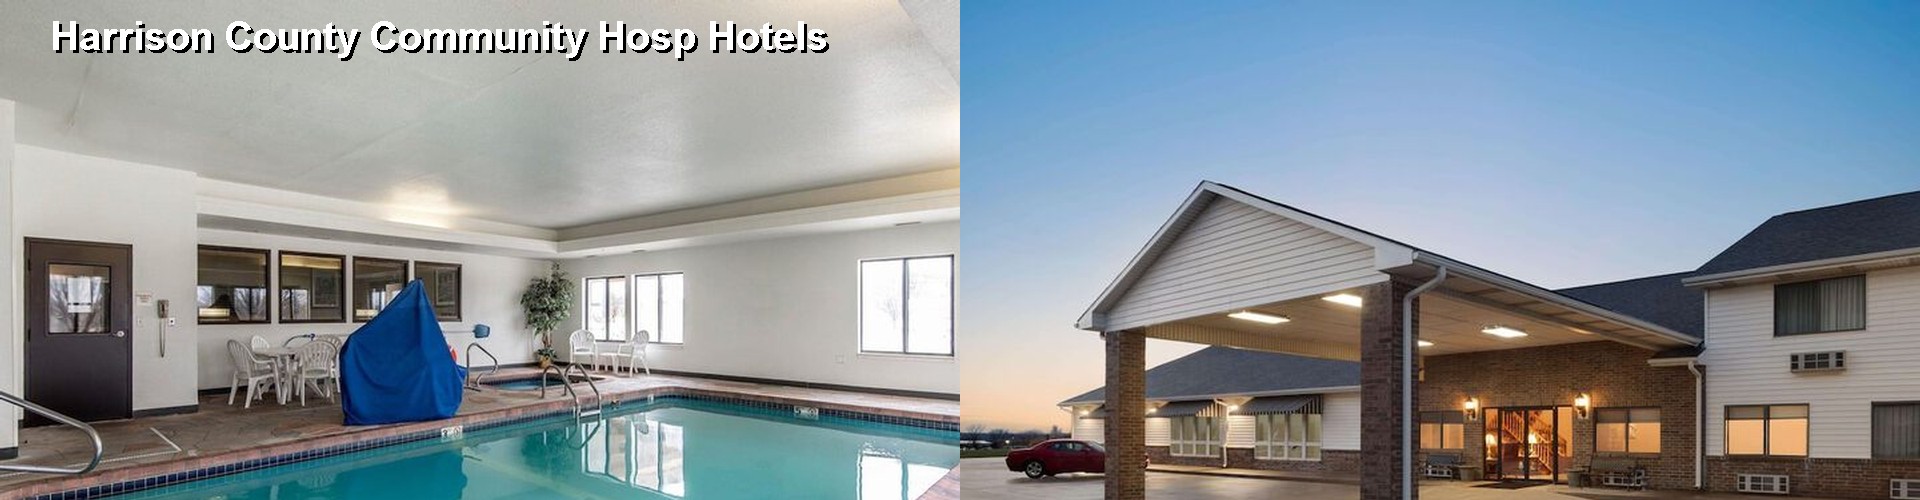 1 Best Hotels near Harrison County Community Hosp